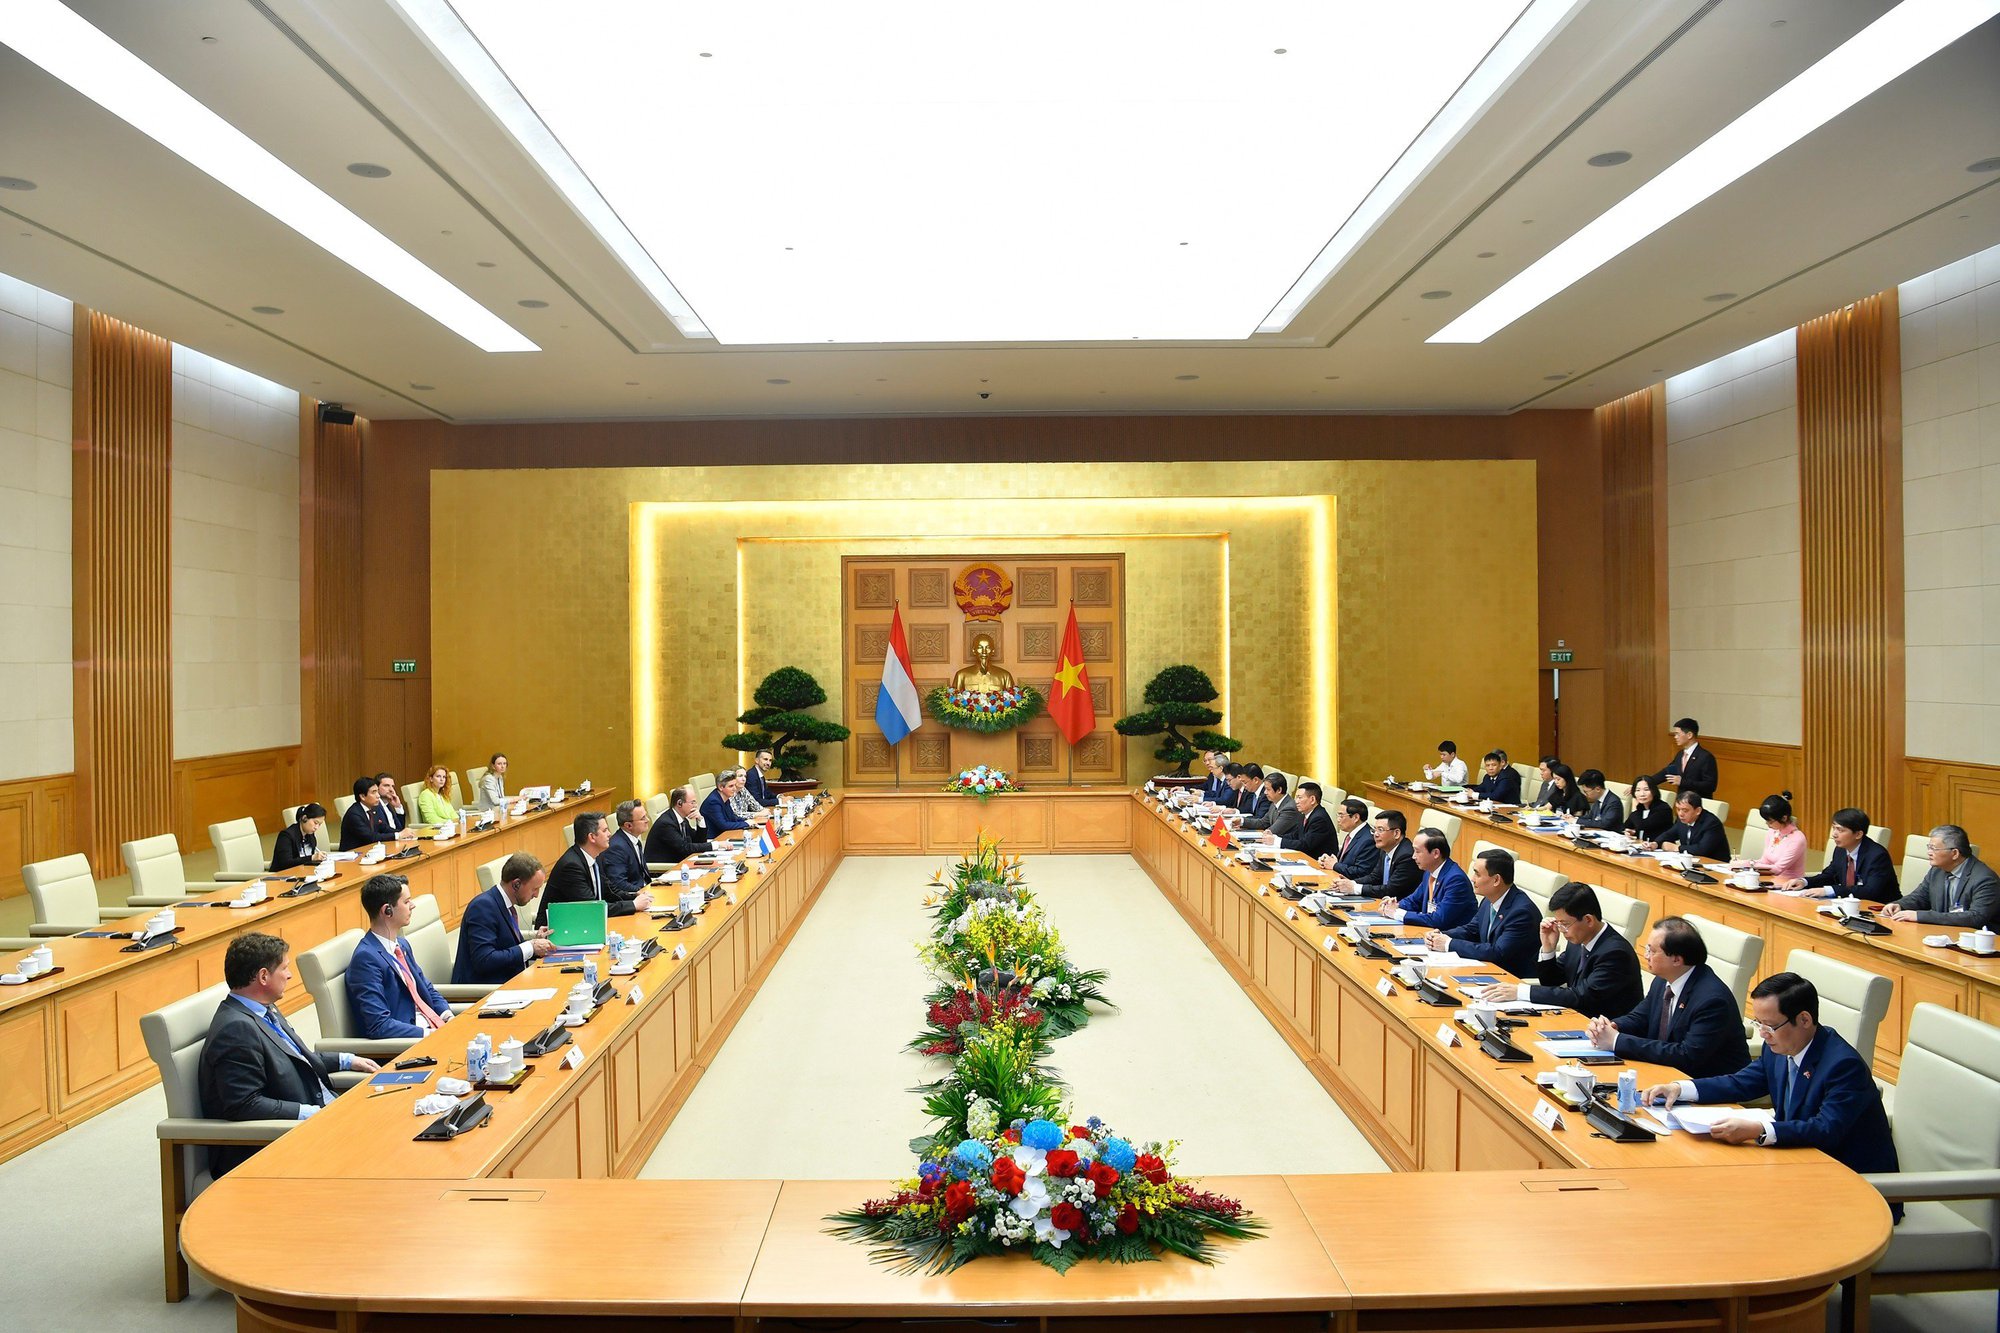 Chùm ảnh: Thủ tướng Phạm Minh Chính đón, hội đàm với Thủ tướng Luxembourg - Ảnh 9.